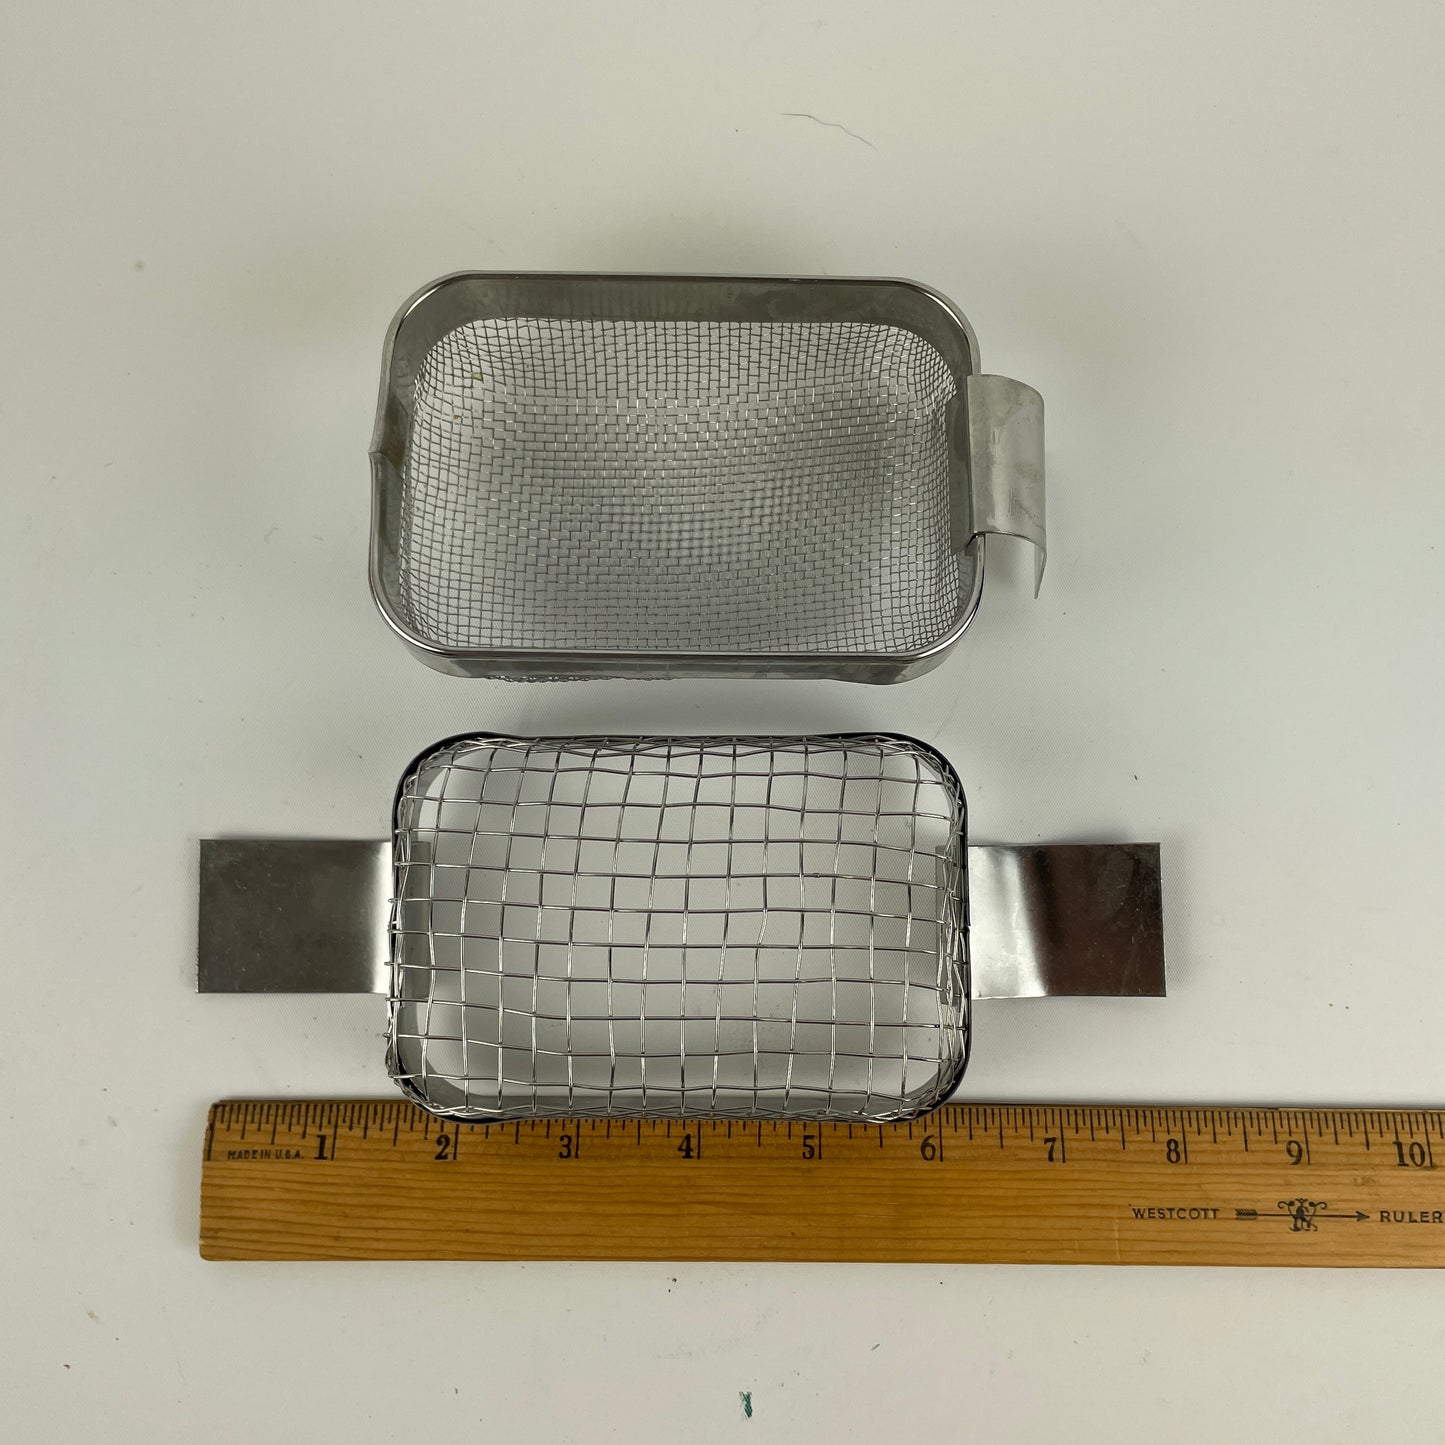 Jan Lot 46- Watchmaker’s Pair of Ultrasonic Wire Baskets